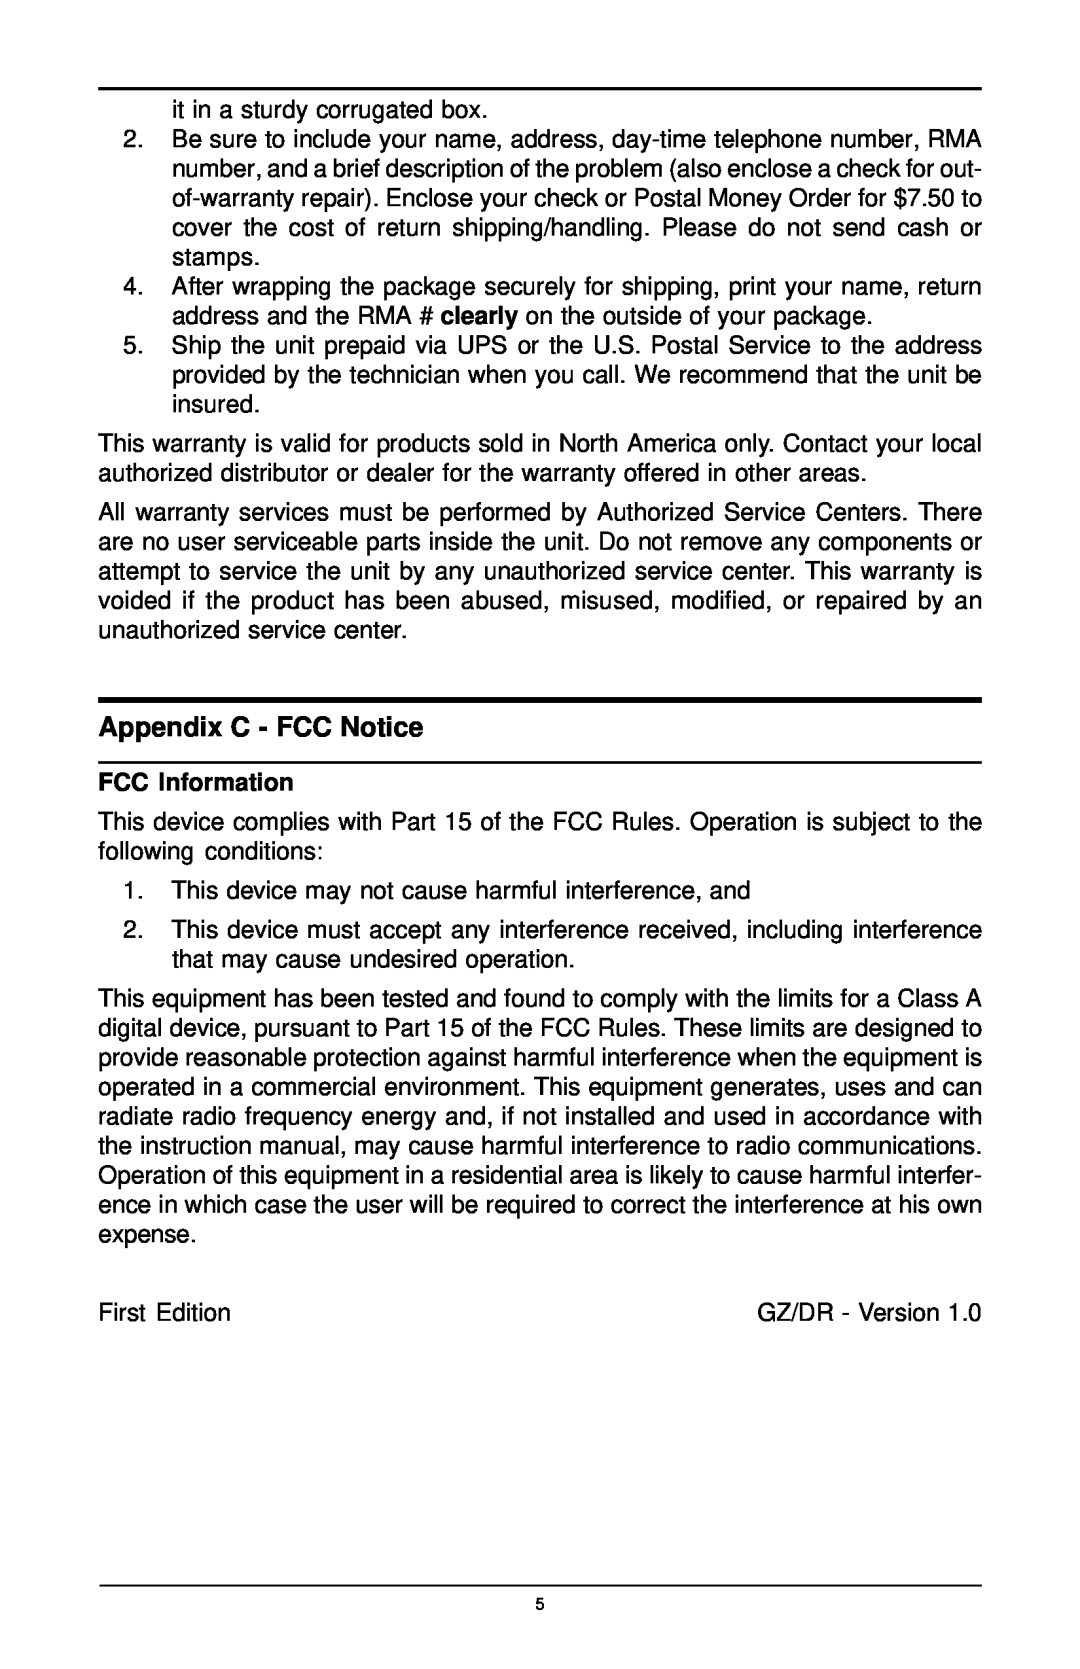 MaxTech FHX-8100 manual Appendix C - FCC Notice, FCC Information 